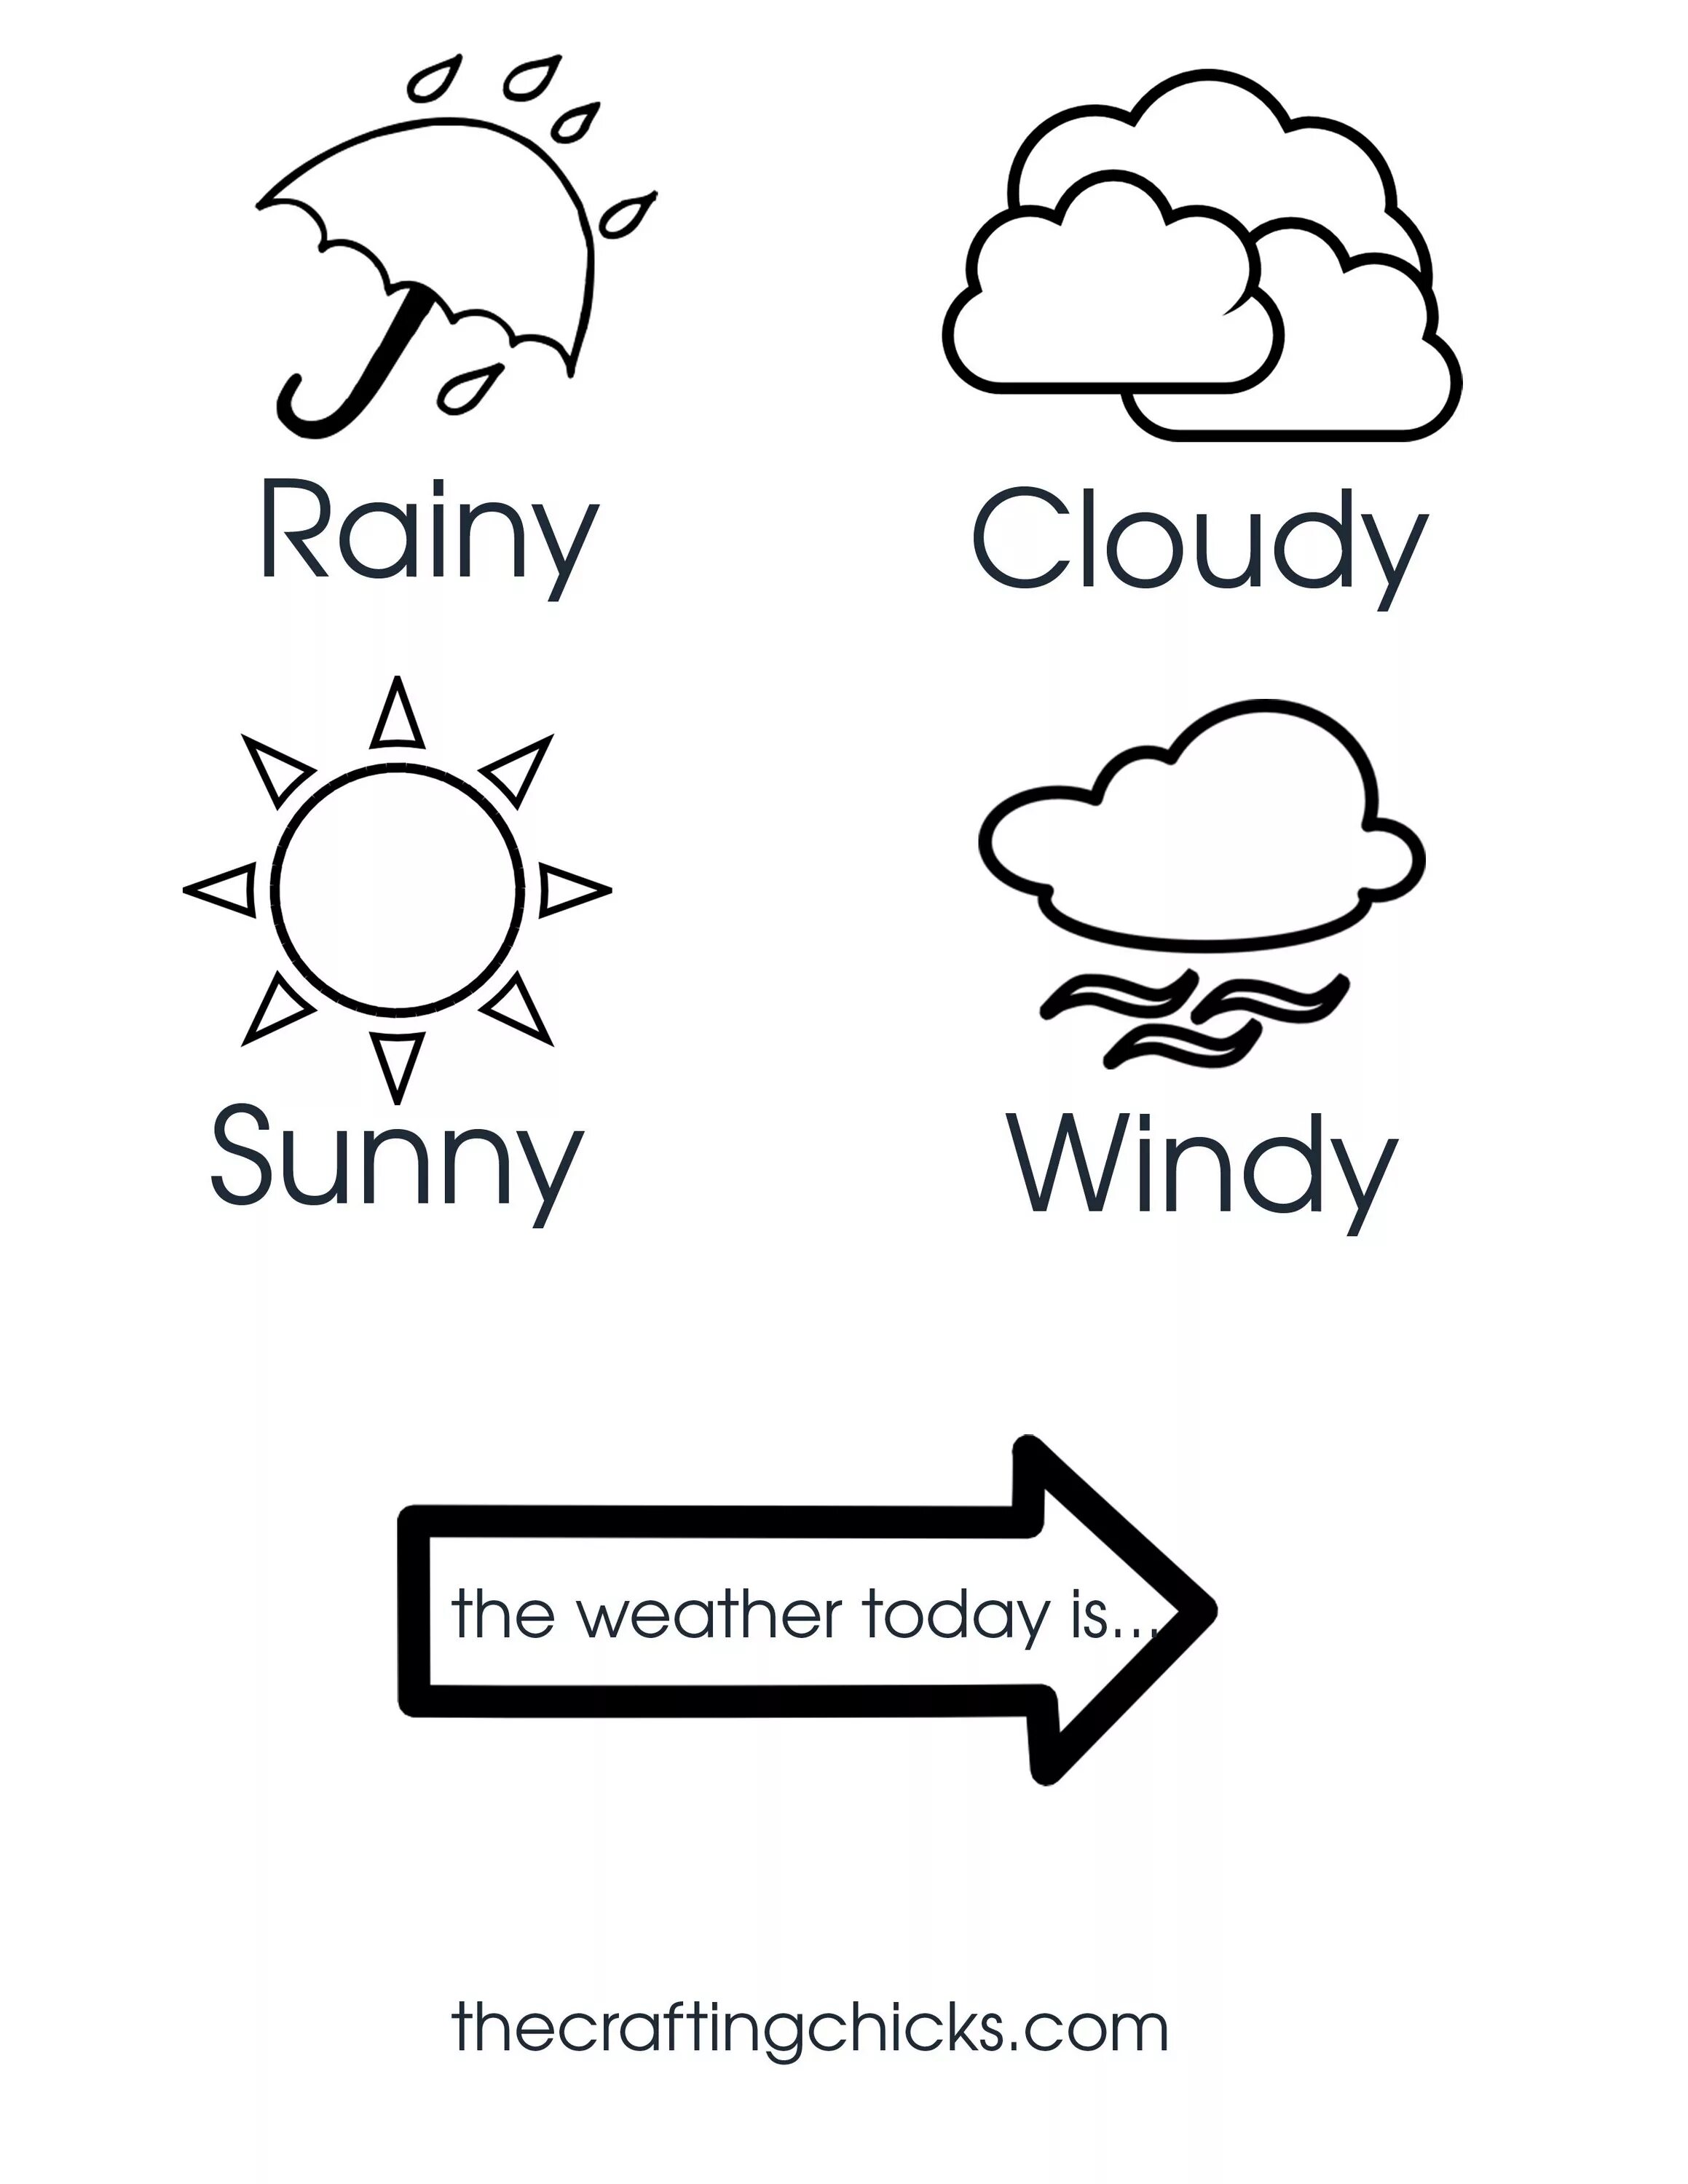 Its sunny перевод на русский. Раскраска погода на английском. Weather для детей на английском. Weather раскраска для детей. Погода на английском для детей раскраска.